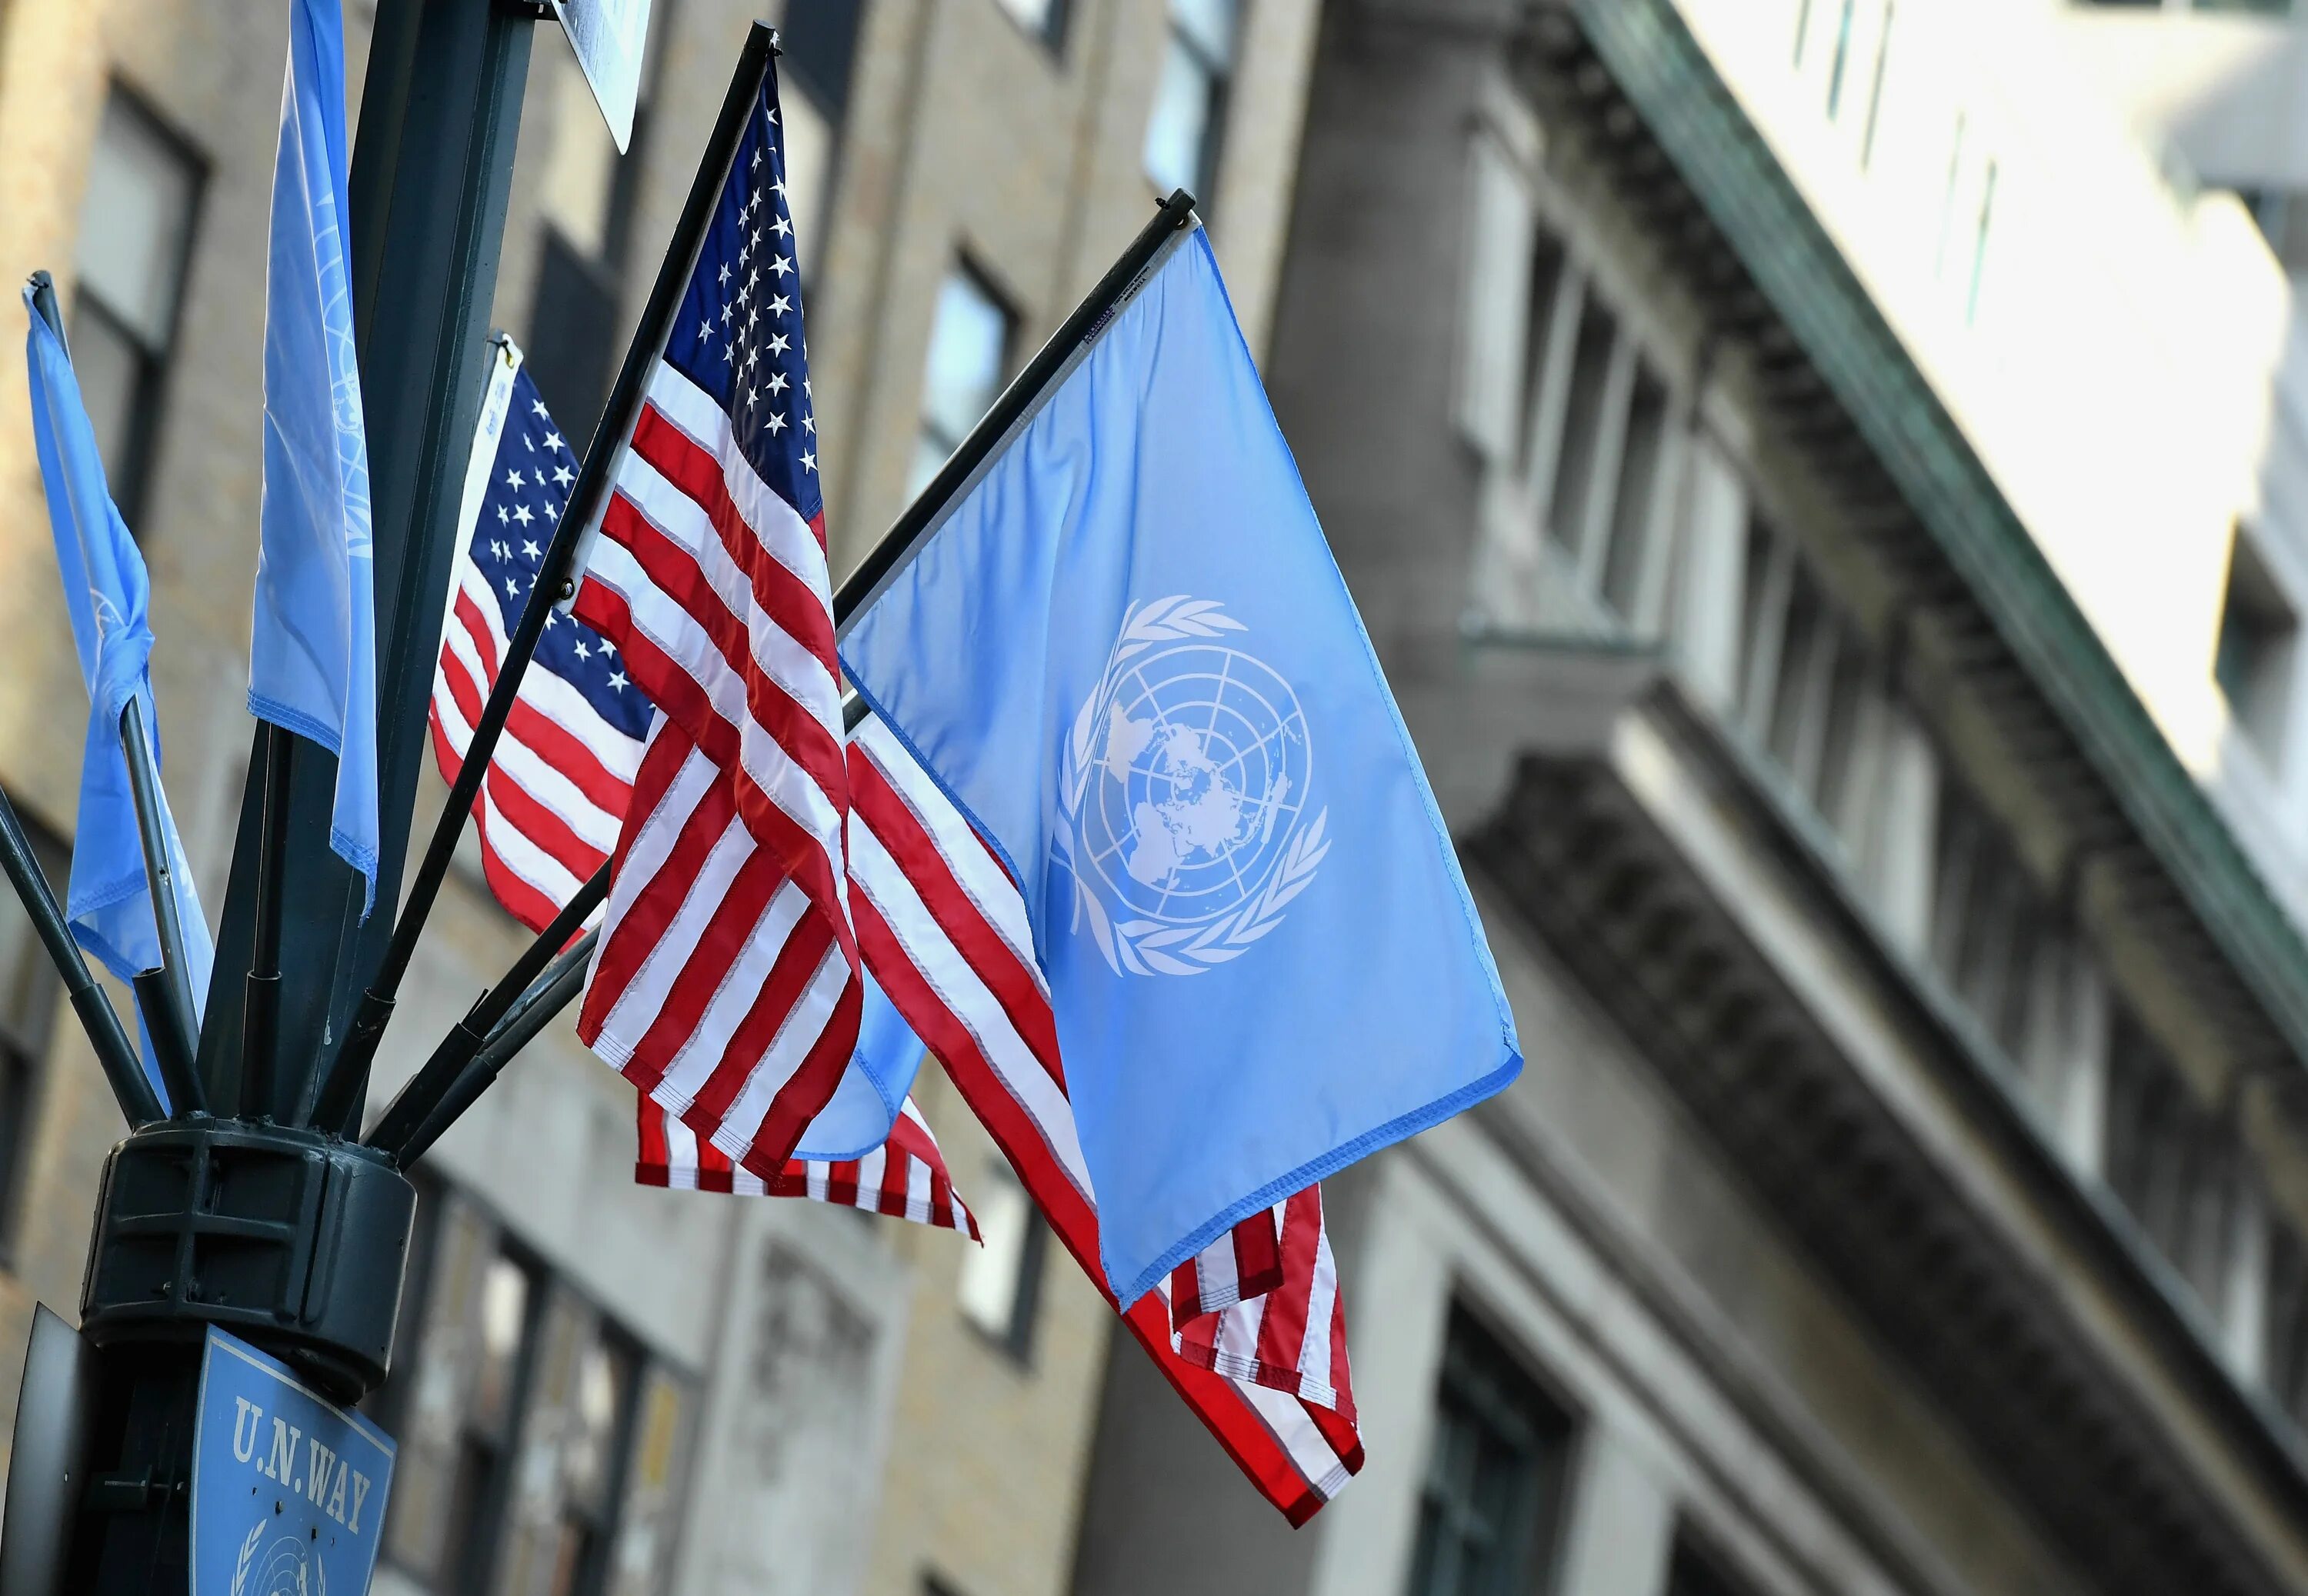 ООН США. Флаг ООН И США. РФ ООН США флаг. Великобритания ООН. Организации оон в сша